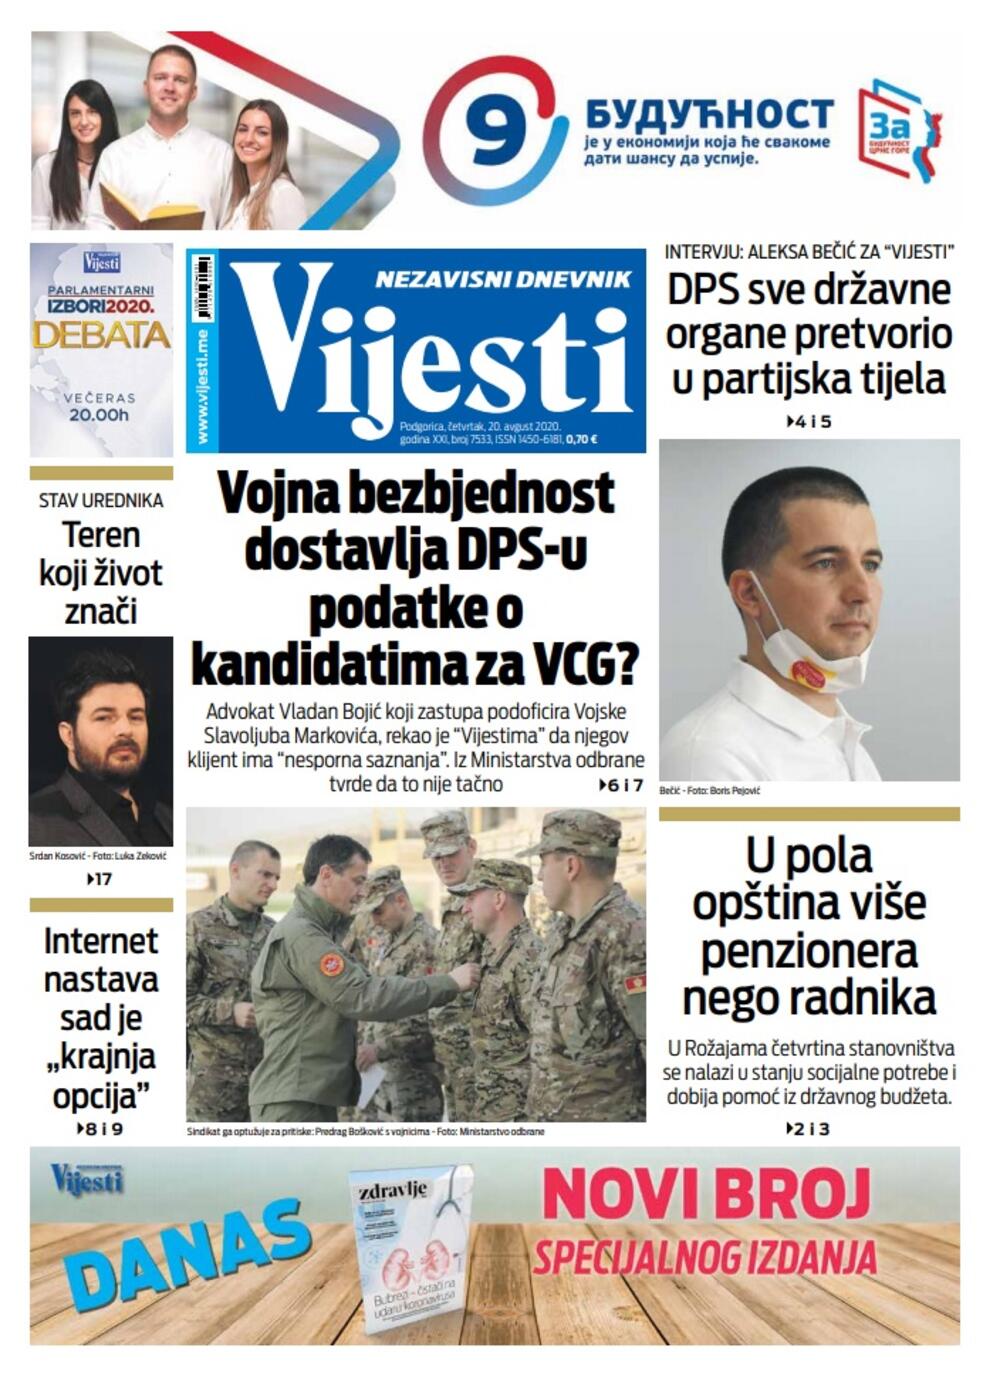 Naslovna strana "Vijesti" za 20. avgust 2020., Foto: Vijesti